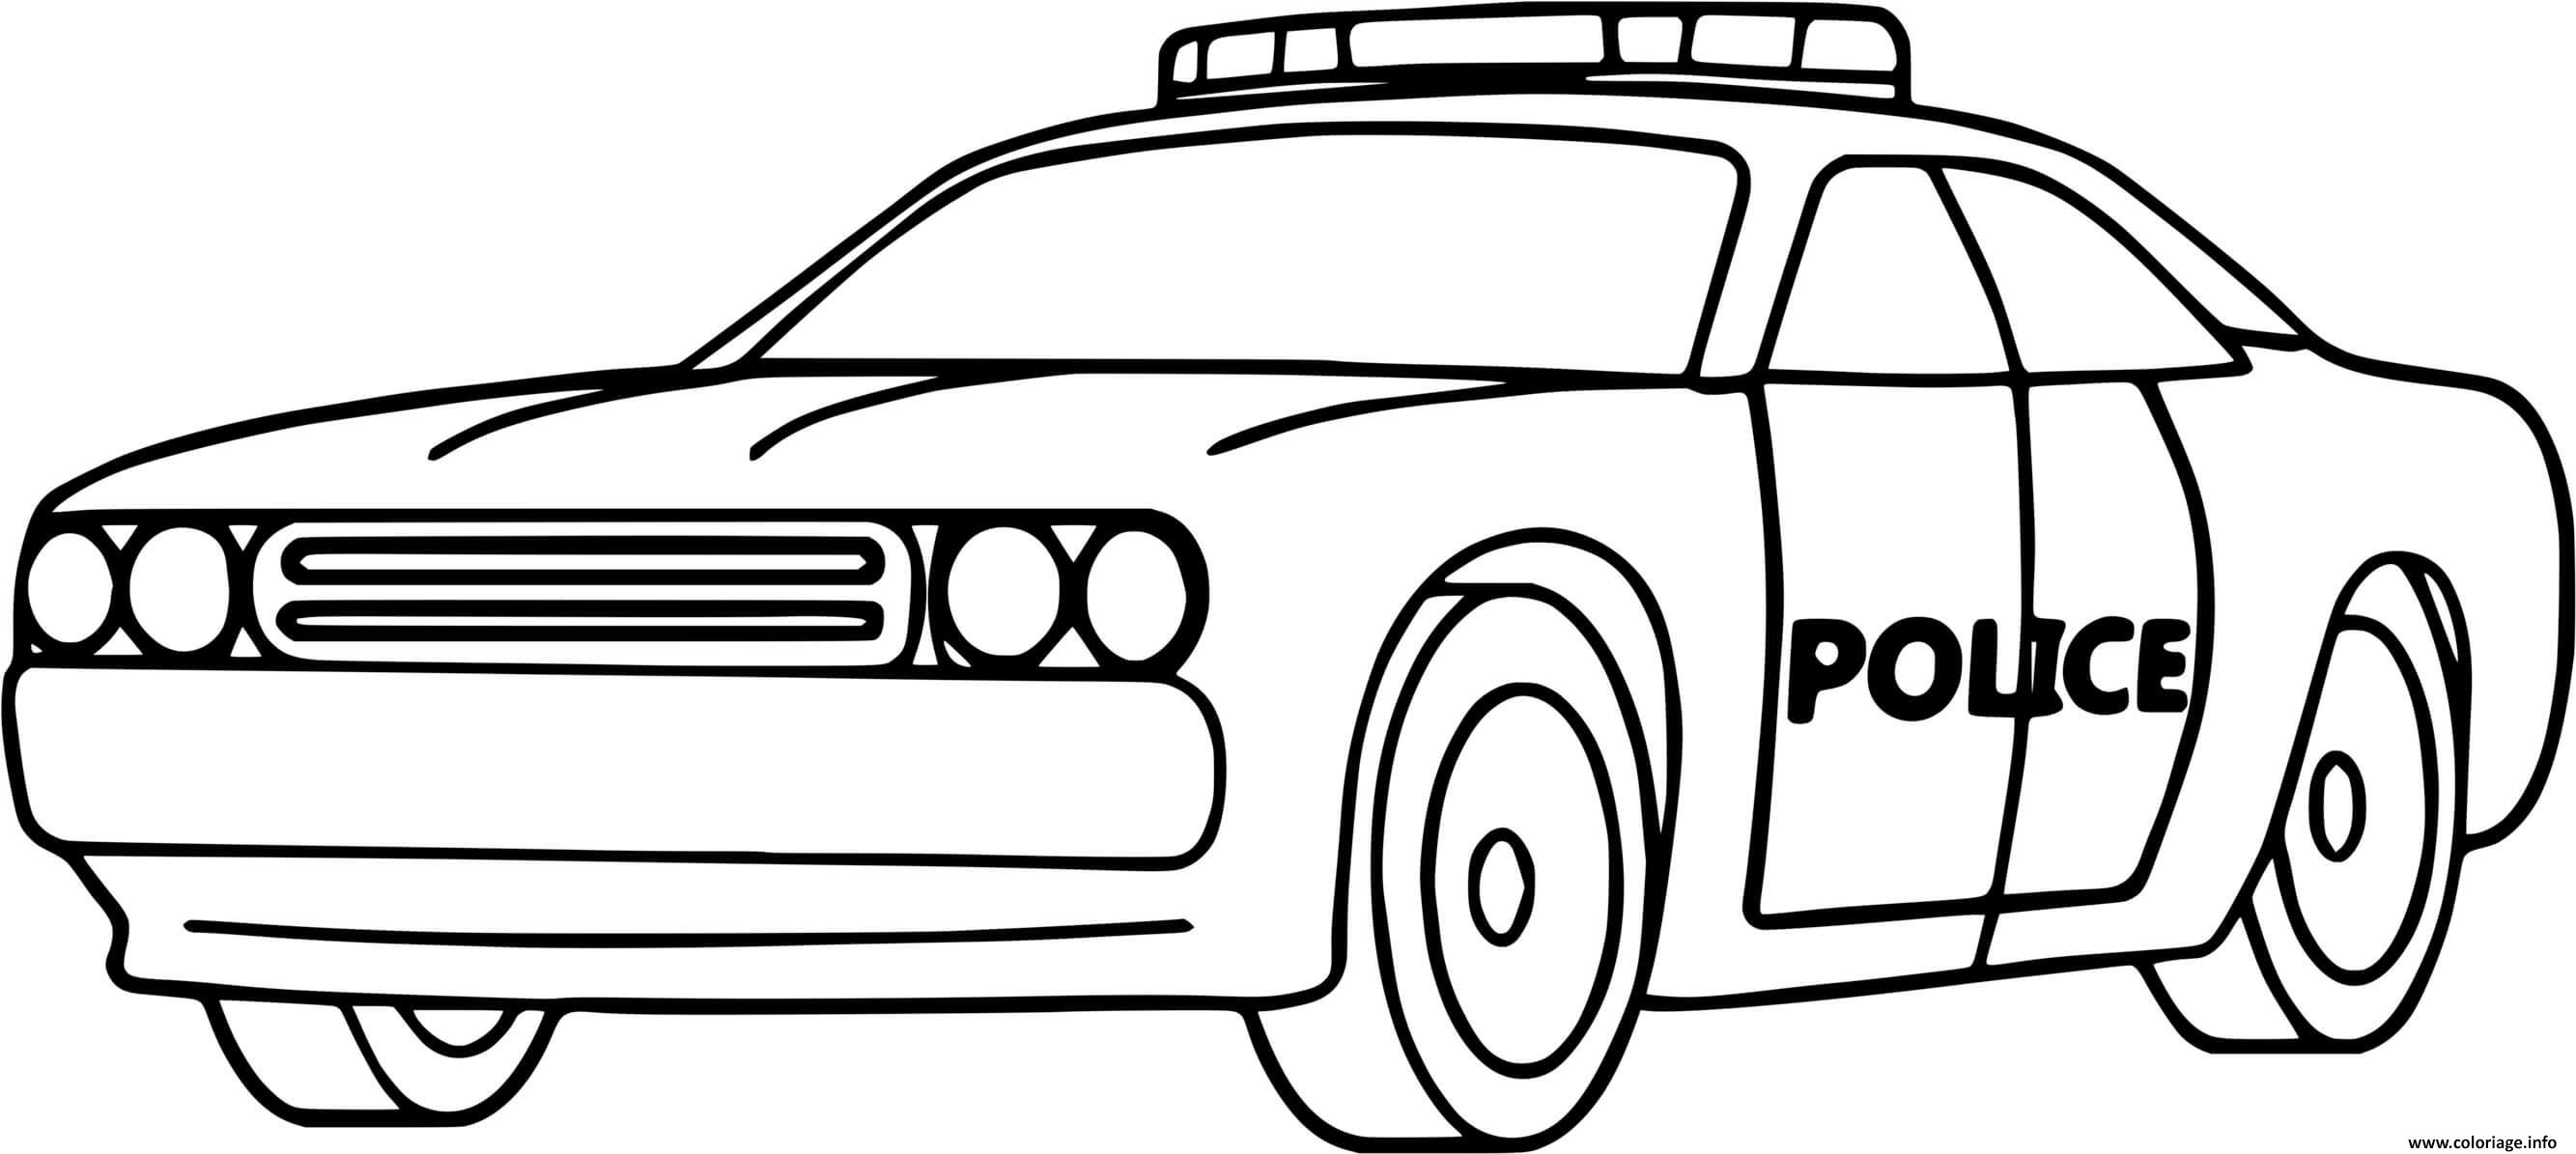 coloriage-voiture-gendarmerie-police-dessin-police-imprimer